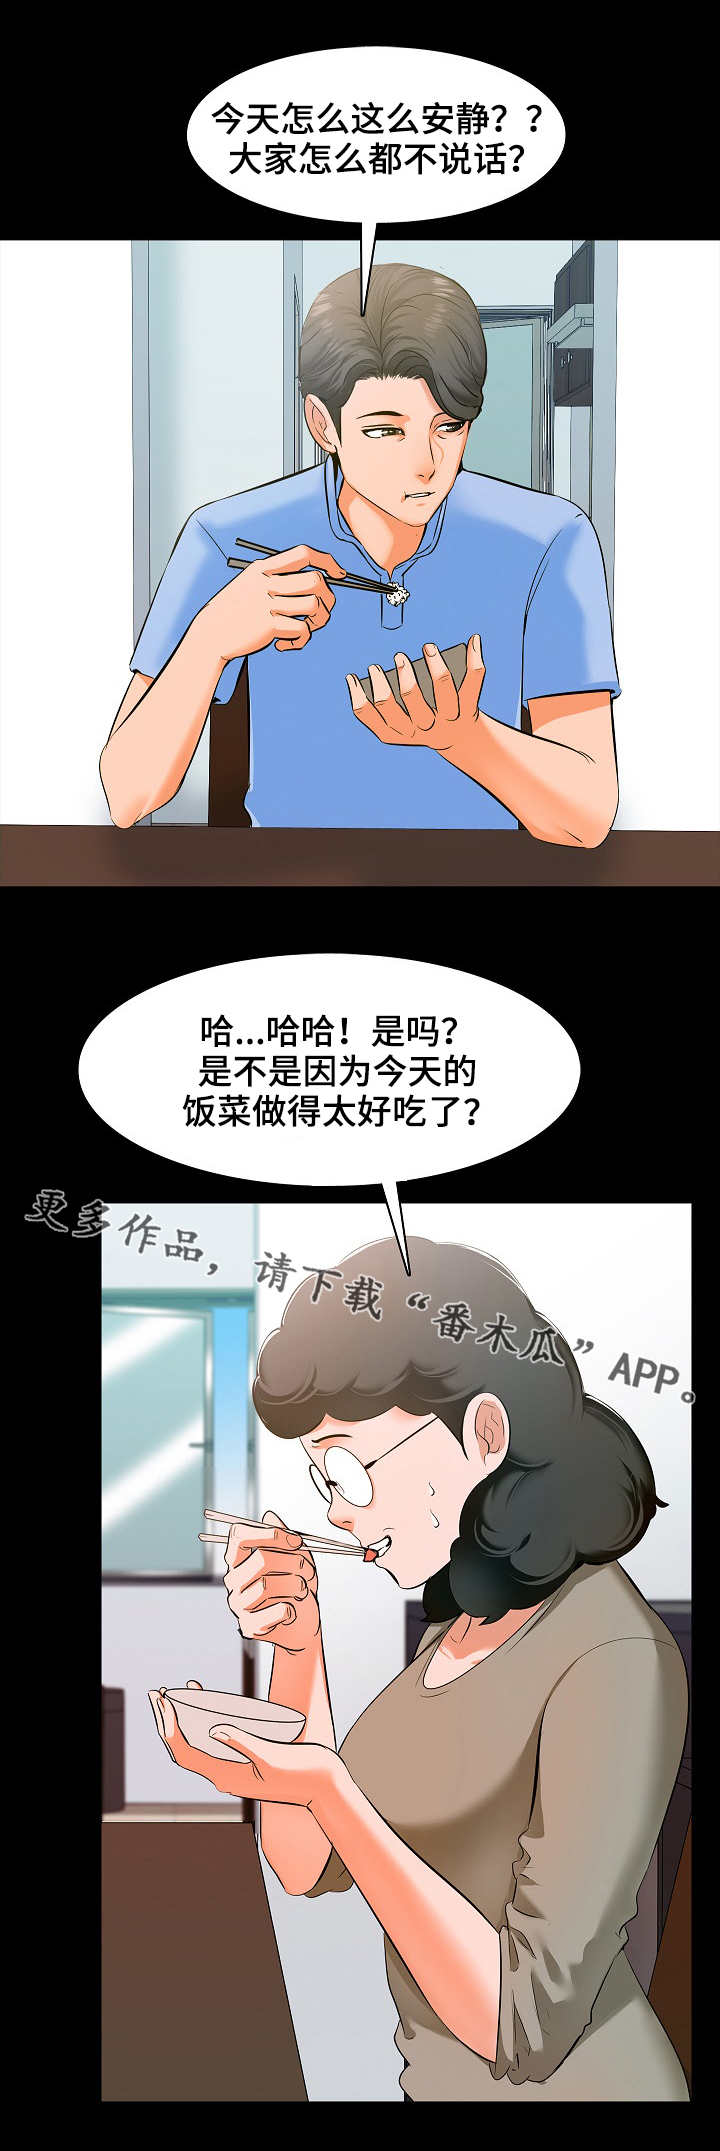 韩国漫画家教老师在线阅读